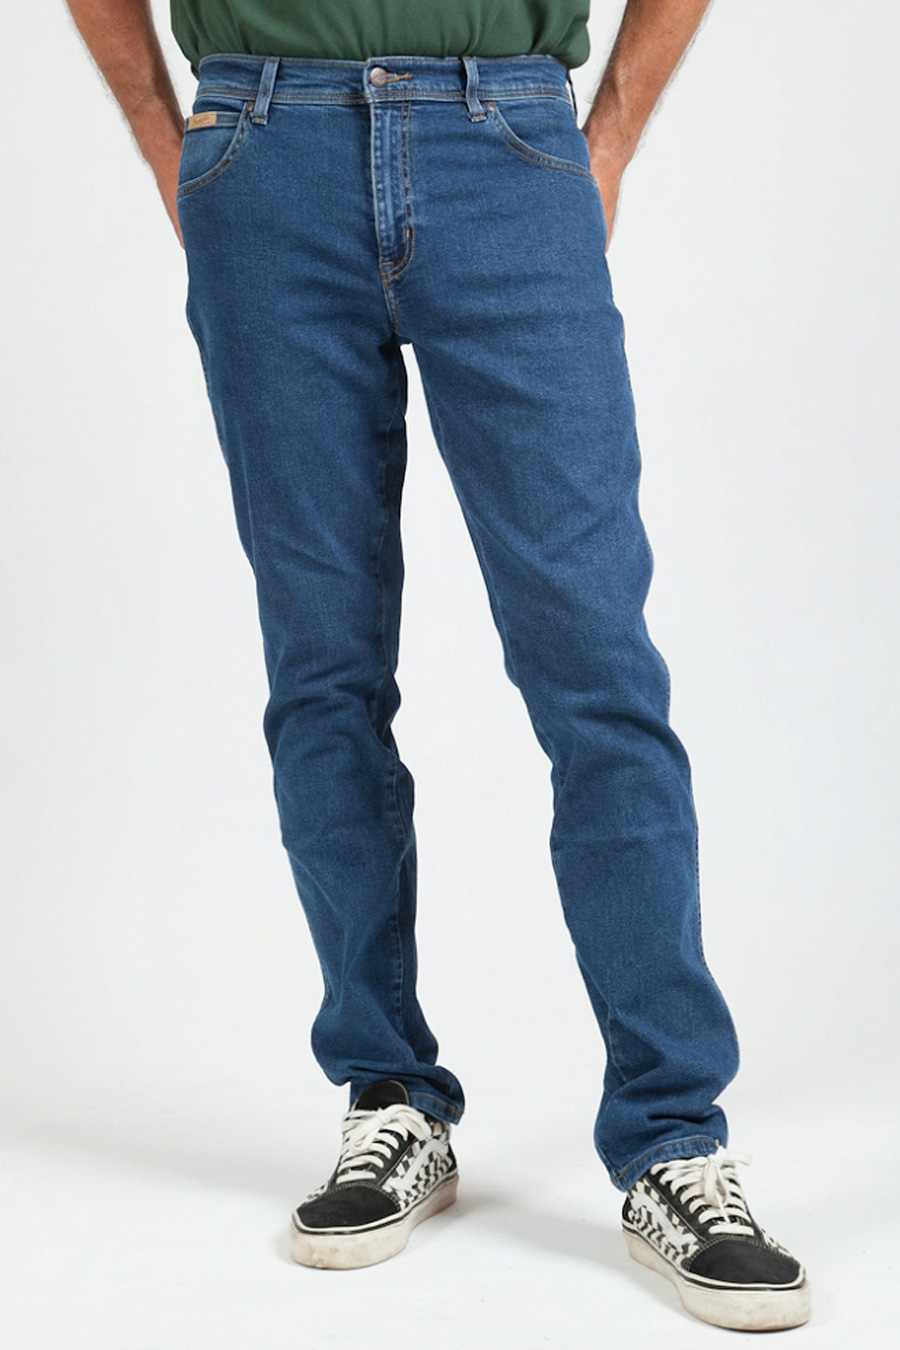 Jeans WRANGLER W12SOAR26